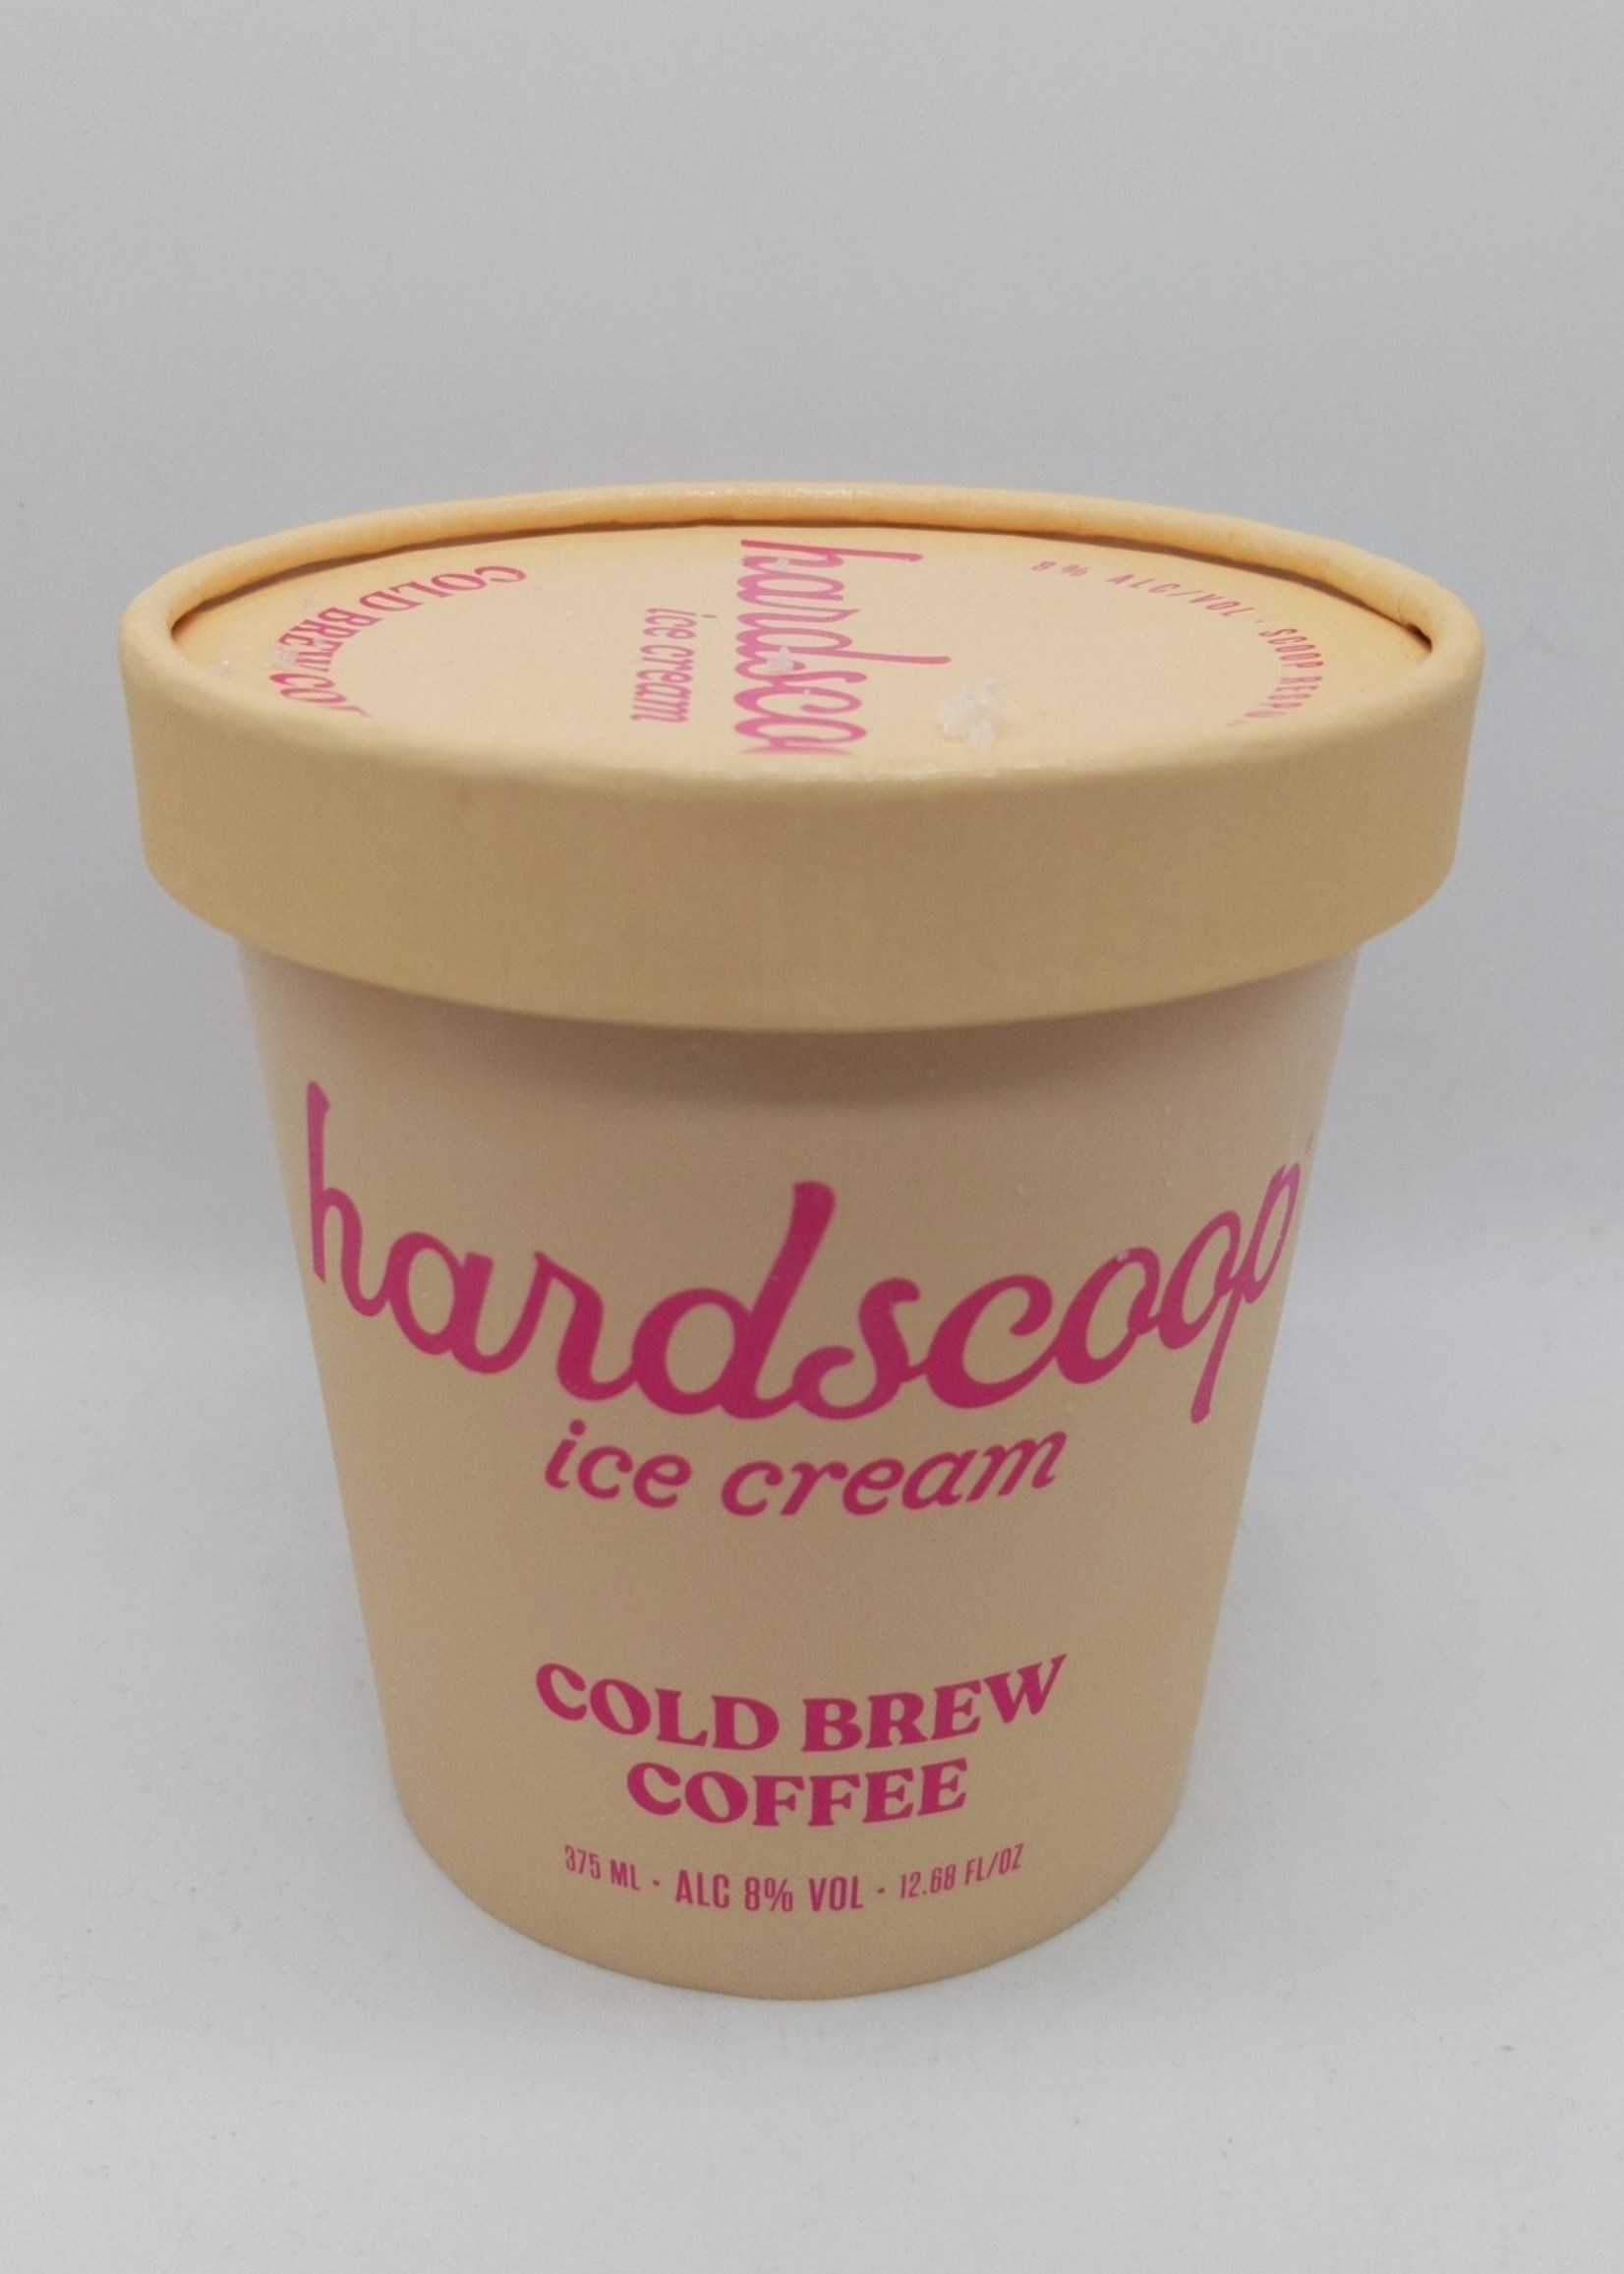 HARDSCOOP COLD BREW COFFEE ICE CREAM